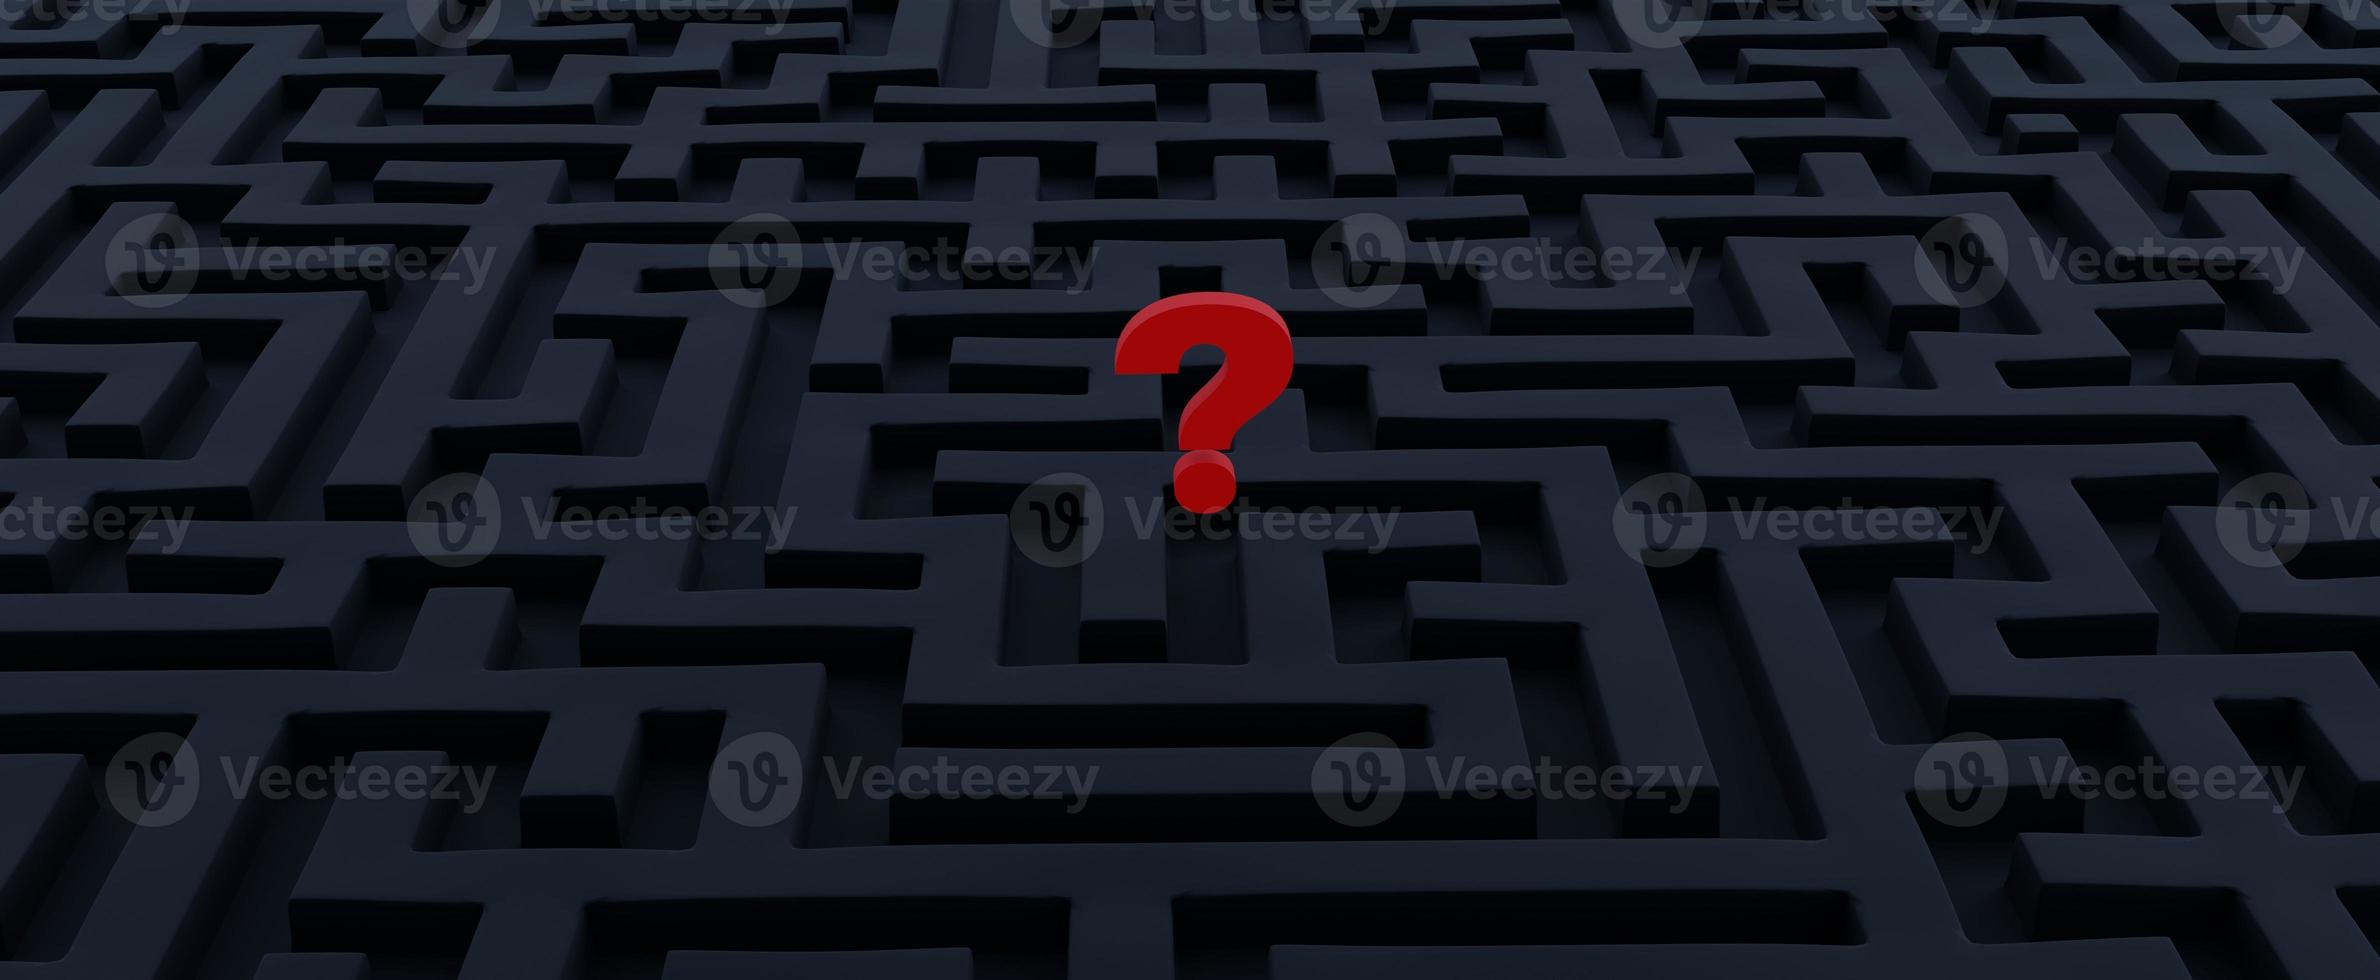 dunkles labyrinth mit rotem fragezeichen. Such- und Lösungskonzept 3D-Darstellung von Geschäfts- und Lebensproblemen. schwierige logische Entscheidung und Wahl der strategischen Richtung foto